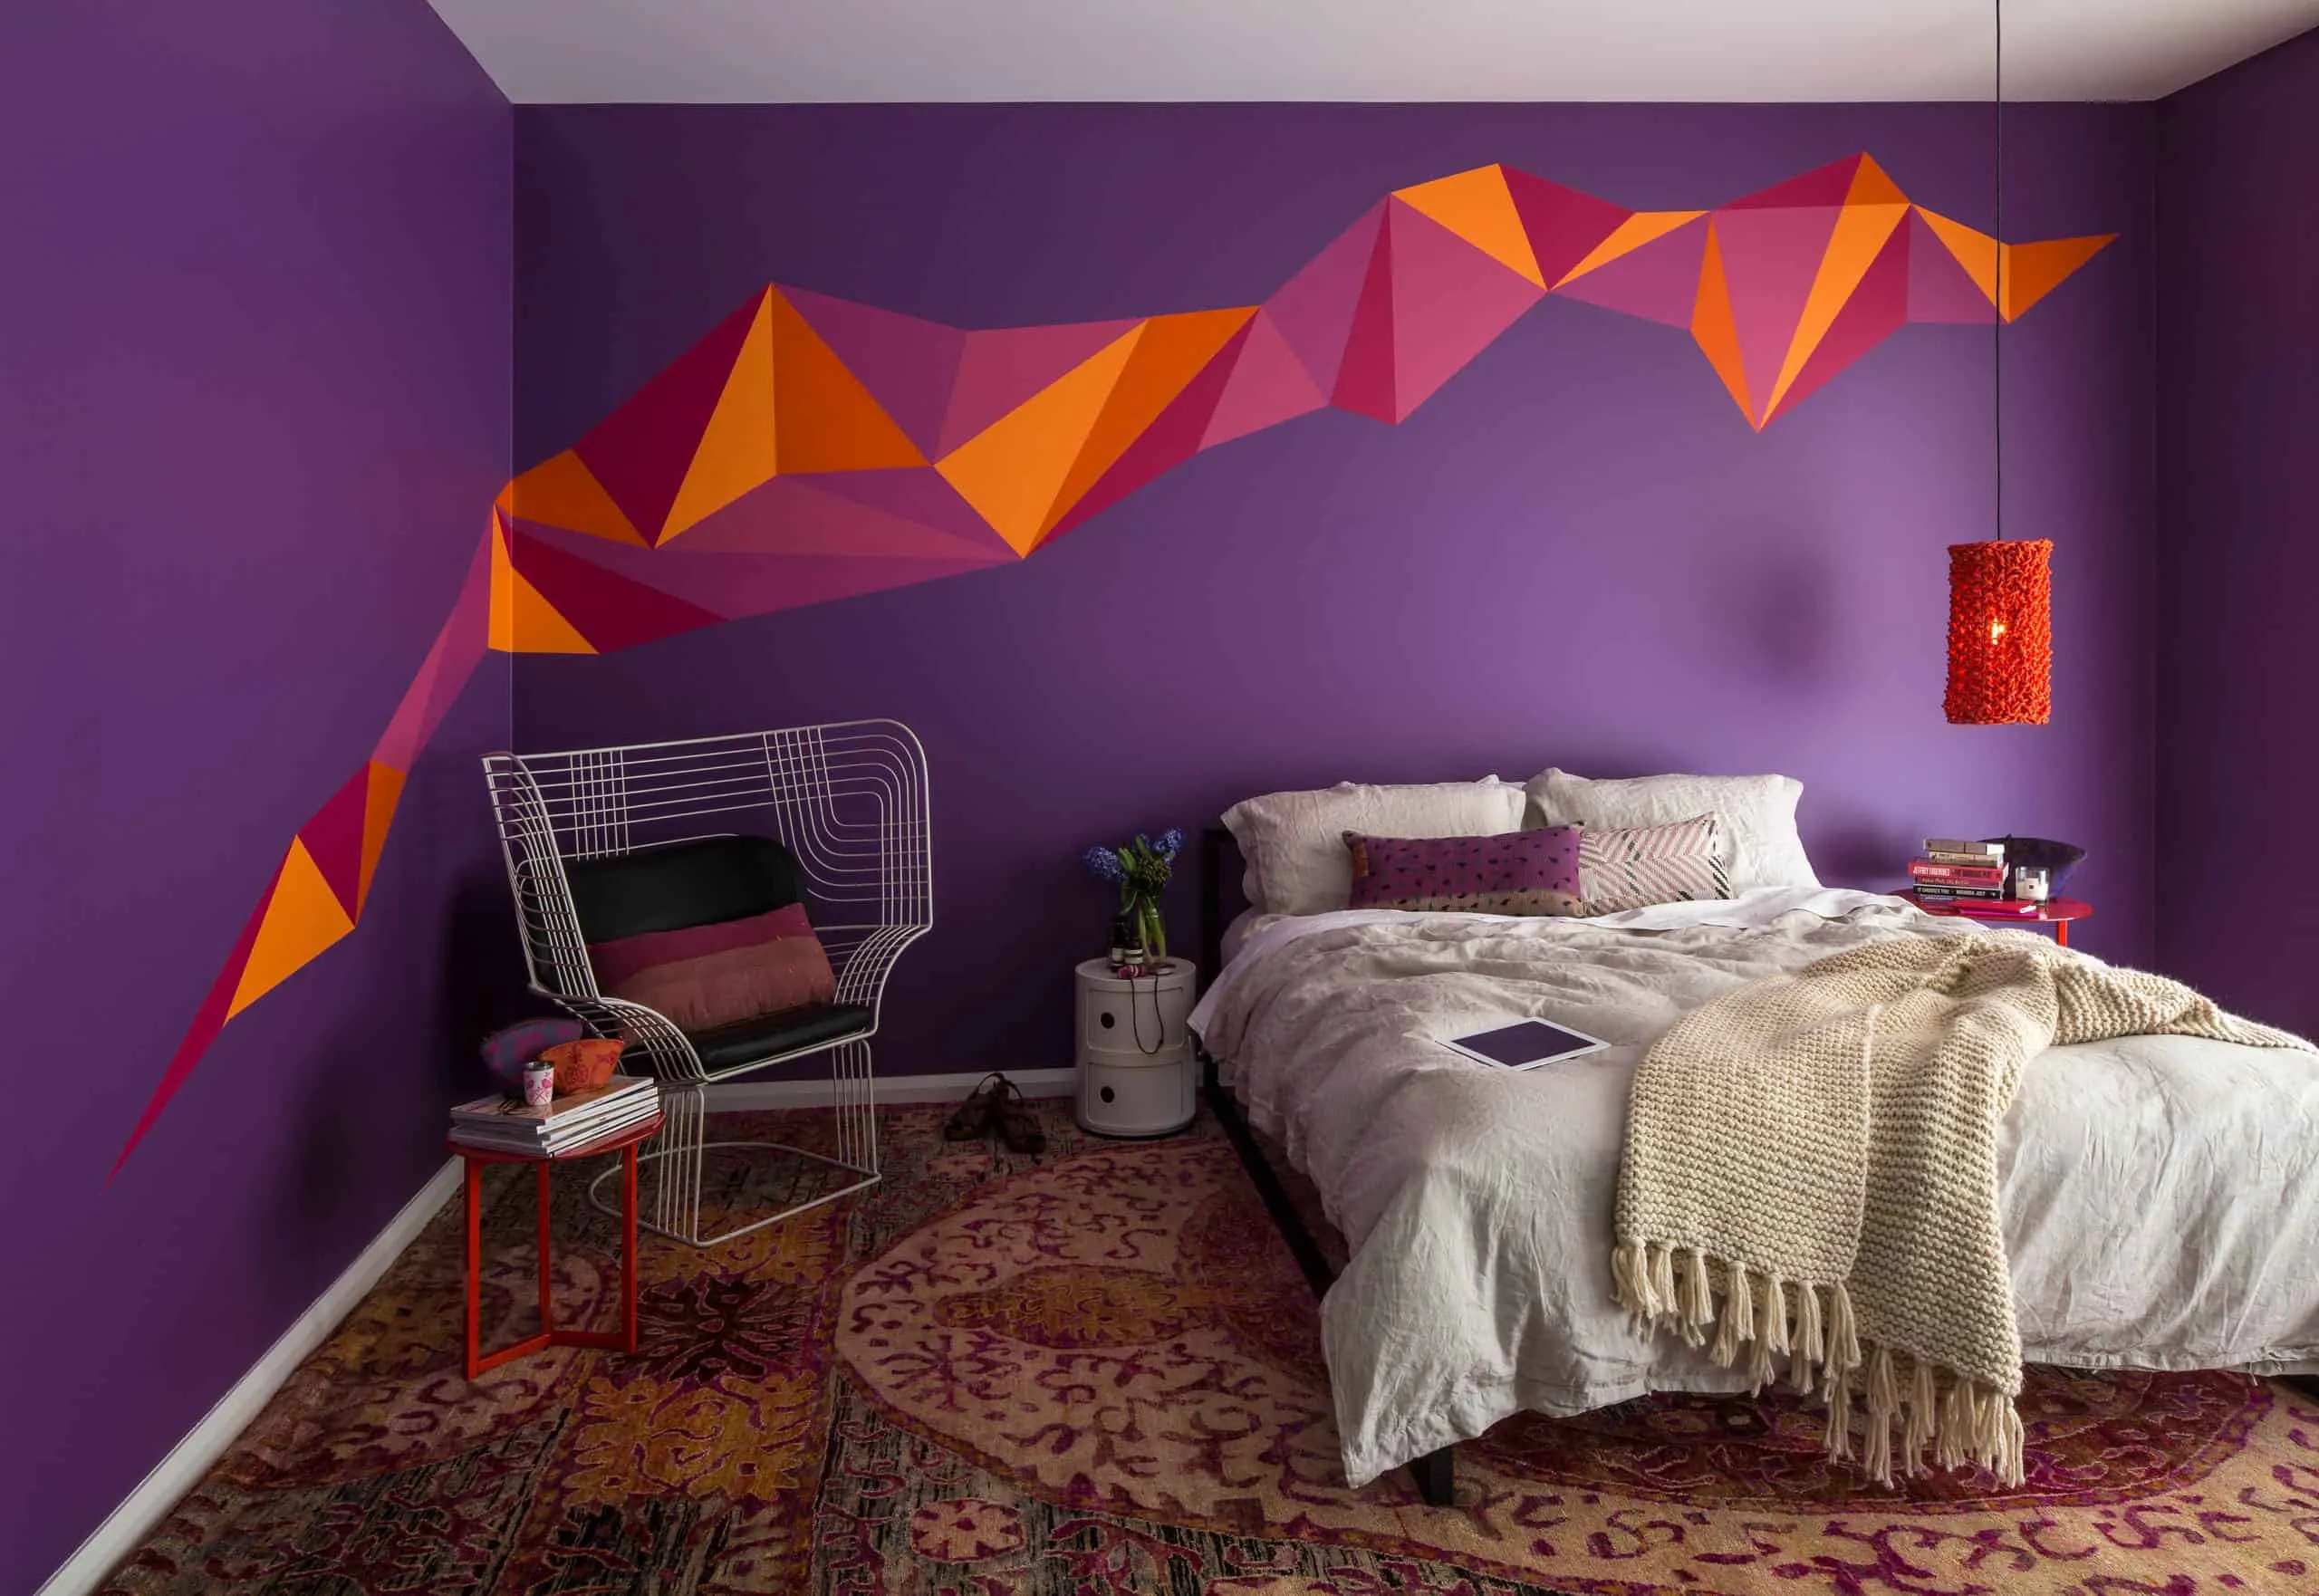 orange wall design on violet walls, modern decor, modern furniture